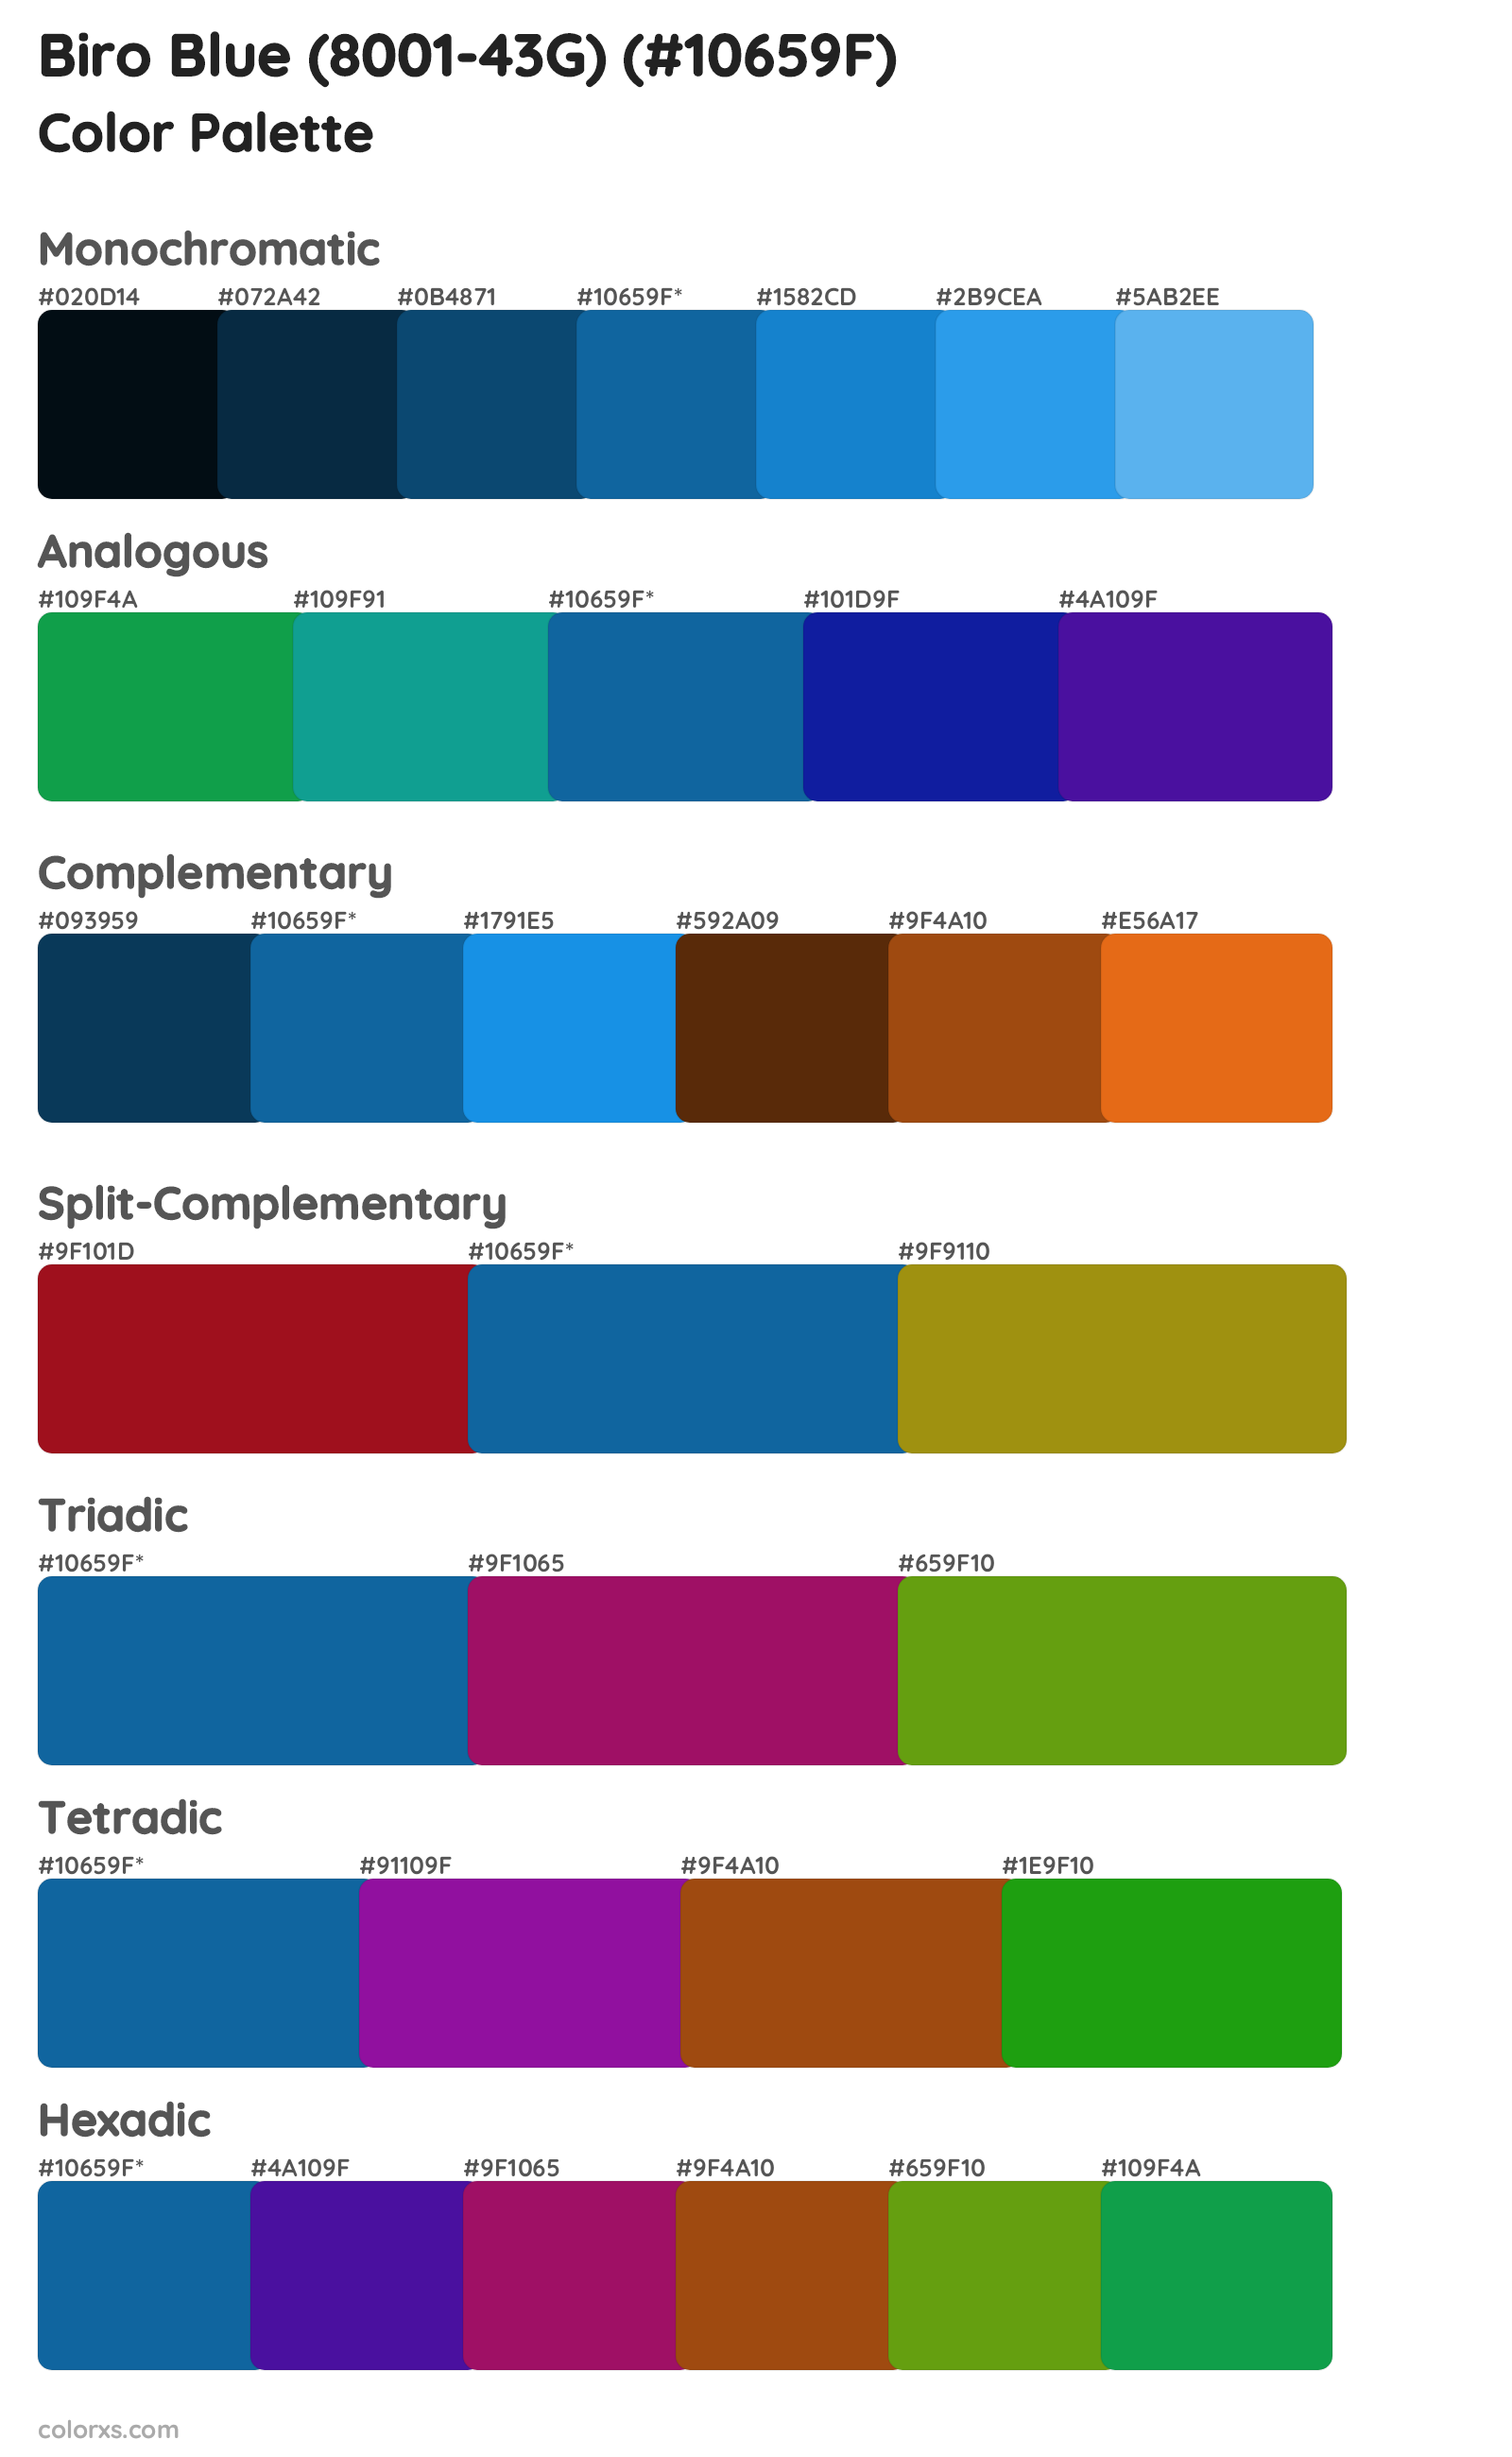 Biro Blue (8001-43G) Color Scheme Palettes